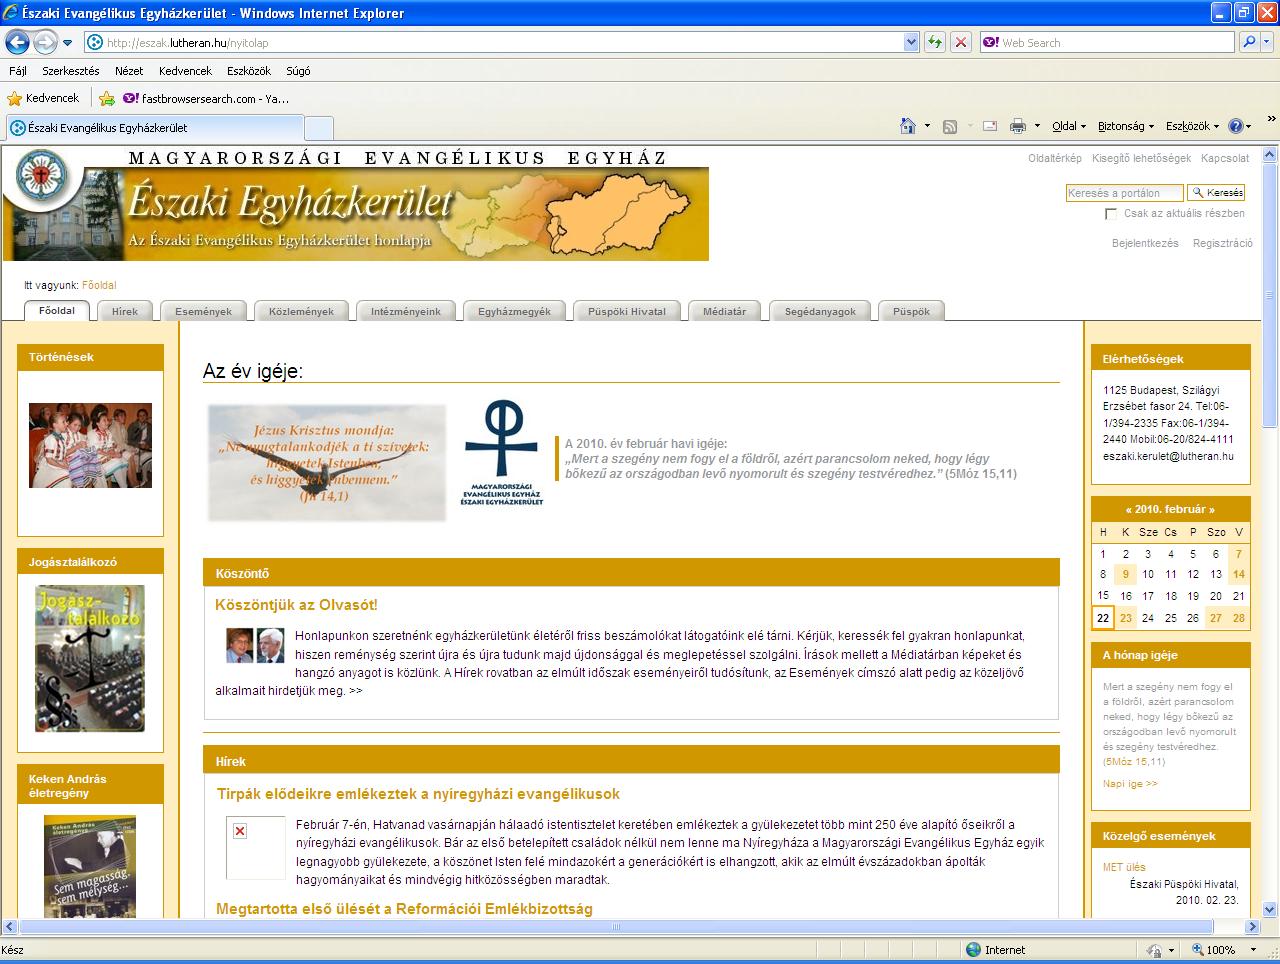 Megújult az Északi Evangélikus Egyházkerület honlapja